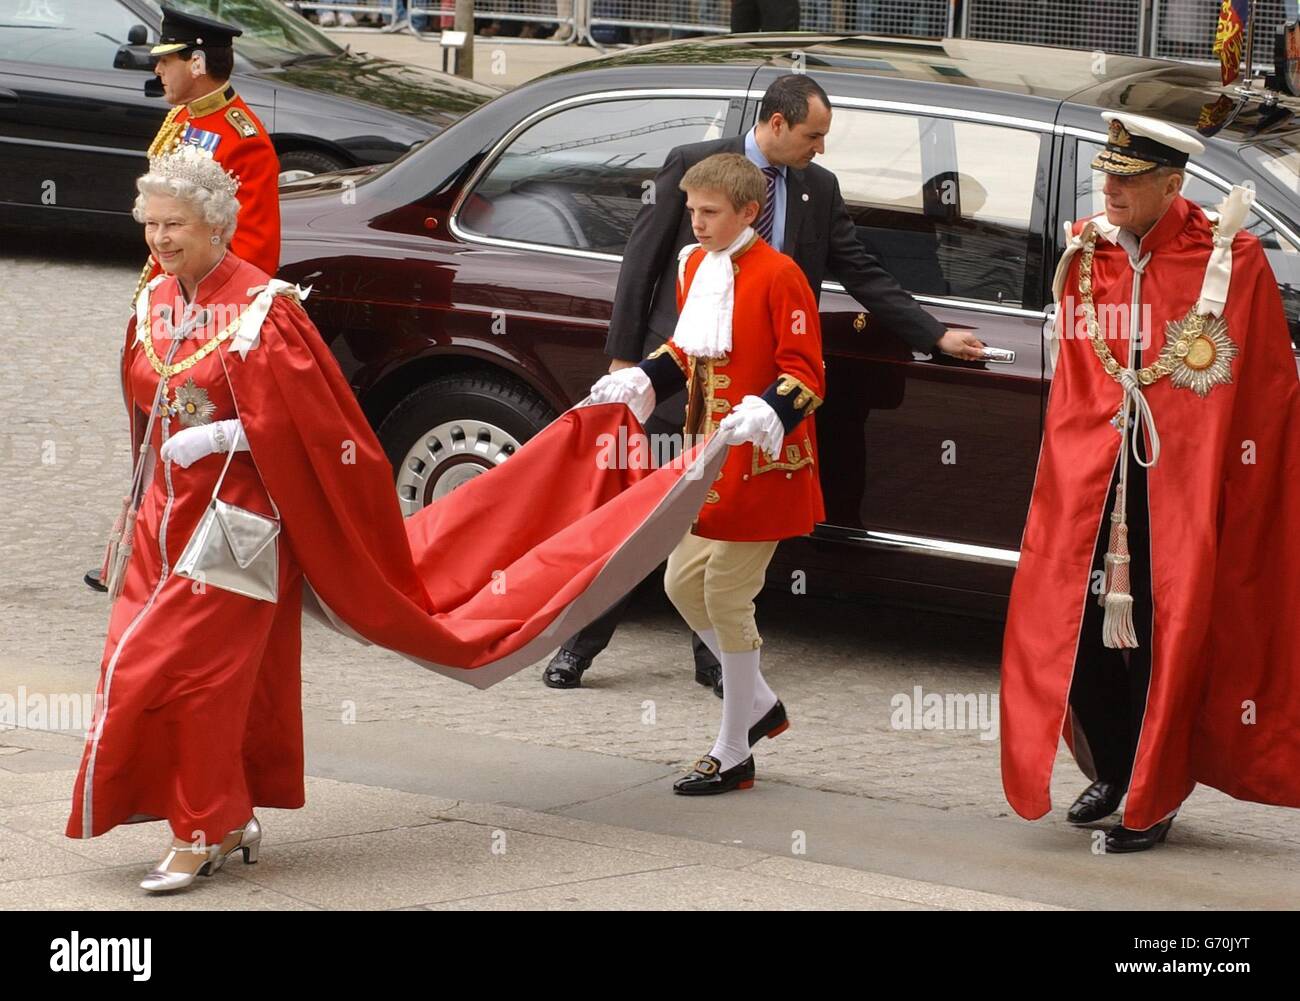 Königin Elizabeth II. Und der Herzog von Edinburgh kommen in der St. Paul's Cathedral im Zentrum von London an, um an einem Gottesdienst für den Orden des Britischen Imperiums teilzunehmen. Die Veranstaltung, bei der rund 2,500 Träger von KBE-, CBE-, MBE- oder OBE-Medaillen anwesend sind, findet alle vier Jahre statt, wobei die Königin als Souverän des Order of the British Empire nur alle acht Jahre anwesend ist. Stockfoto